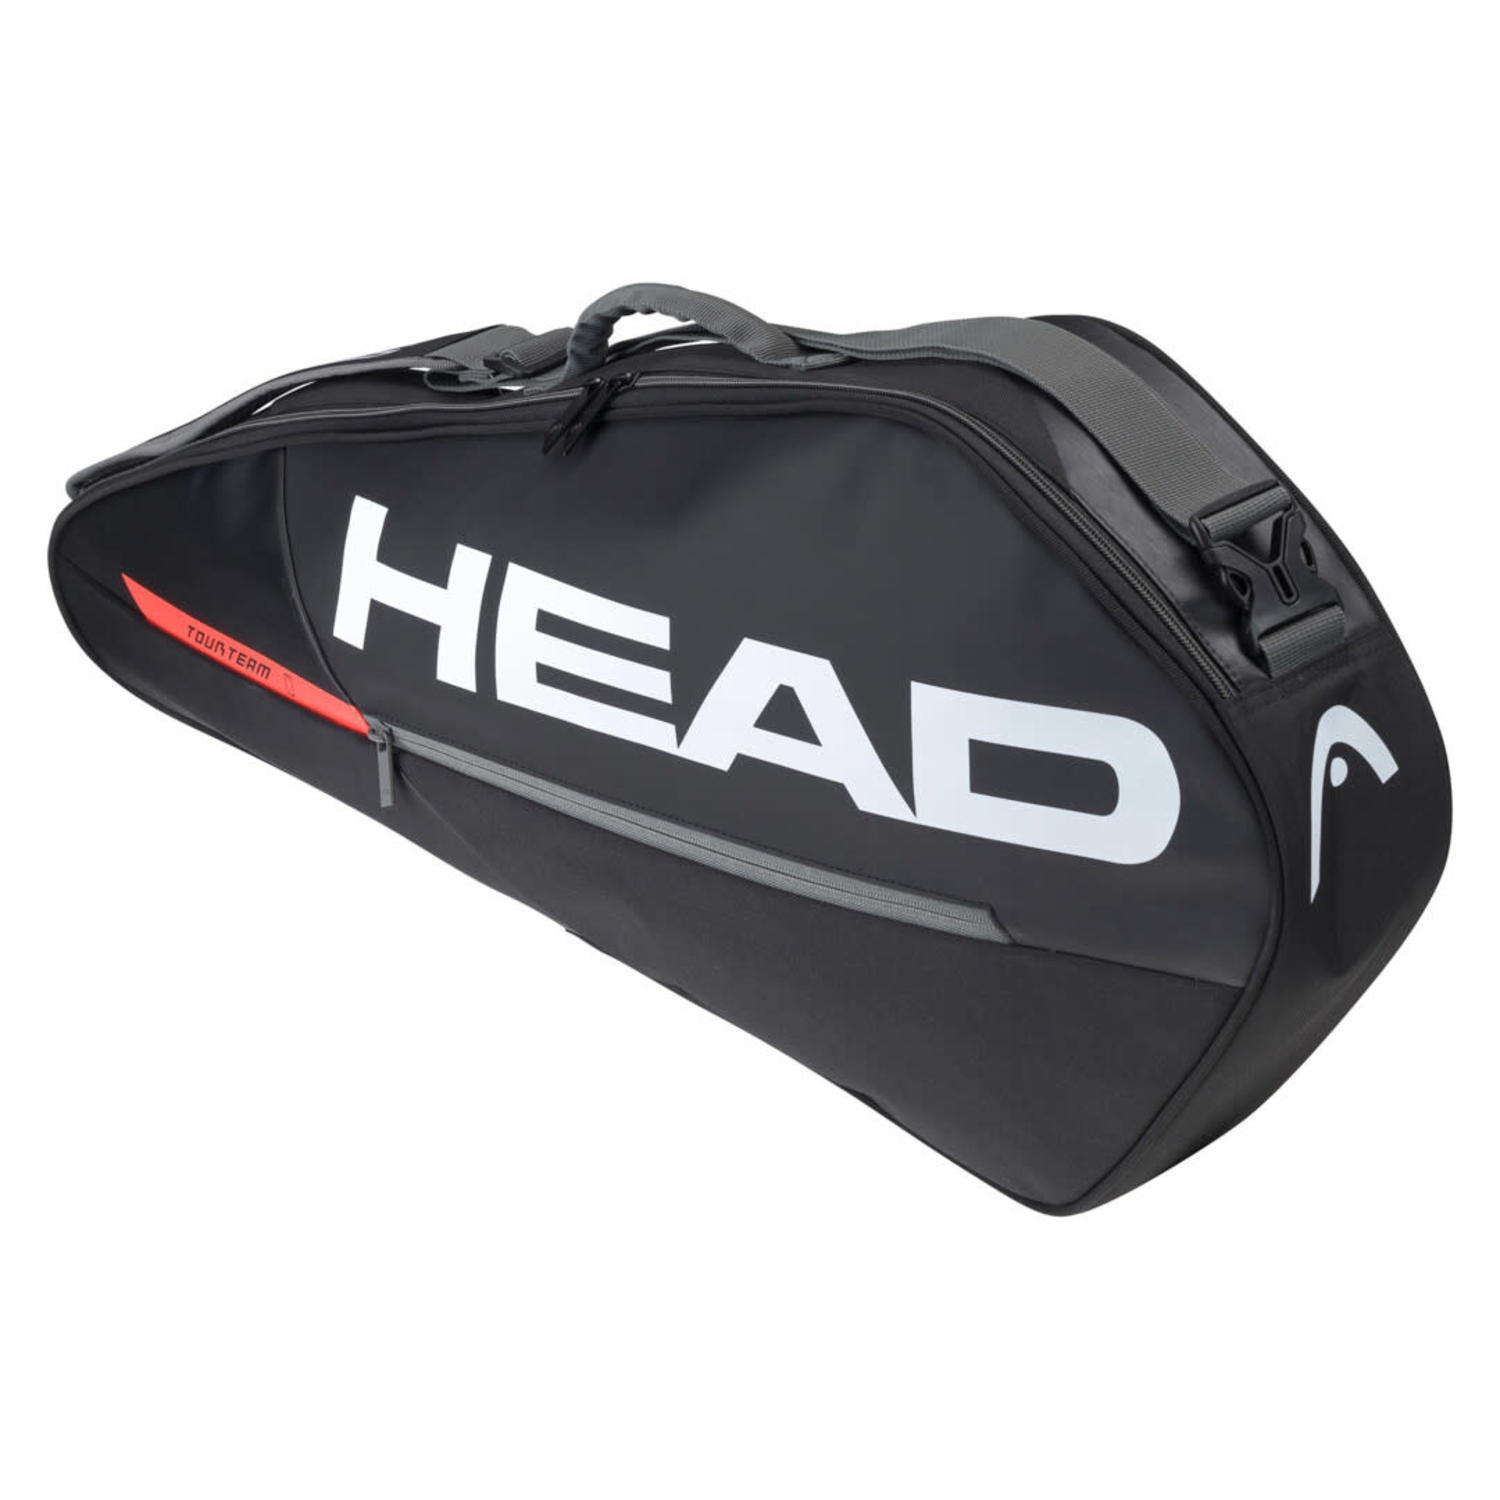 HEAD Tour Team 3r Pro Tennistasche